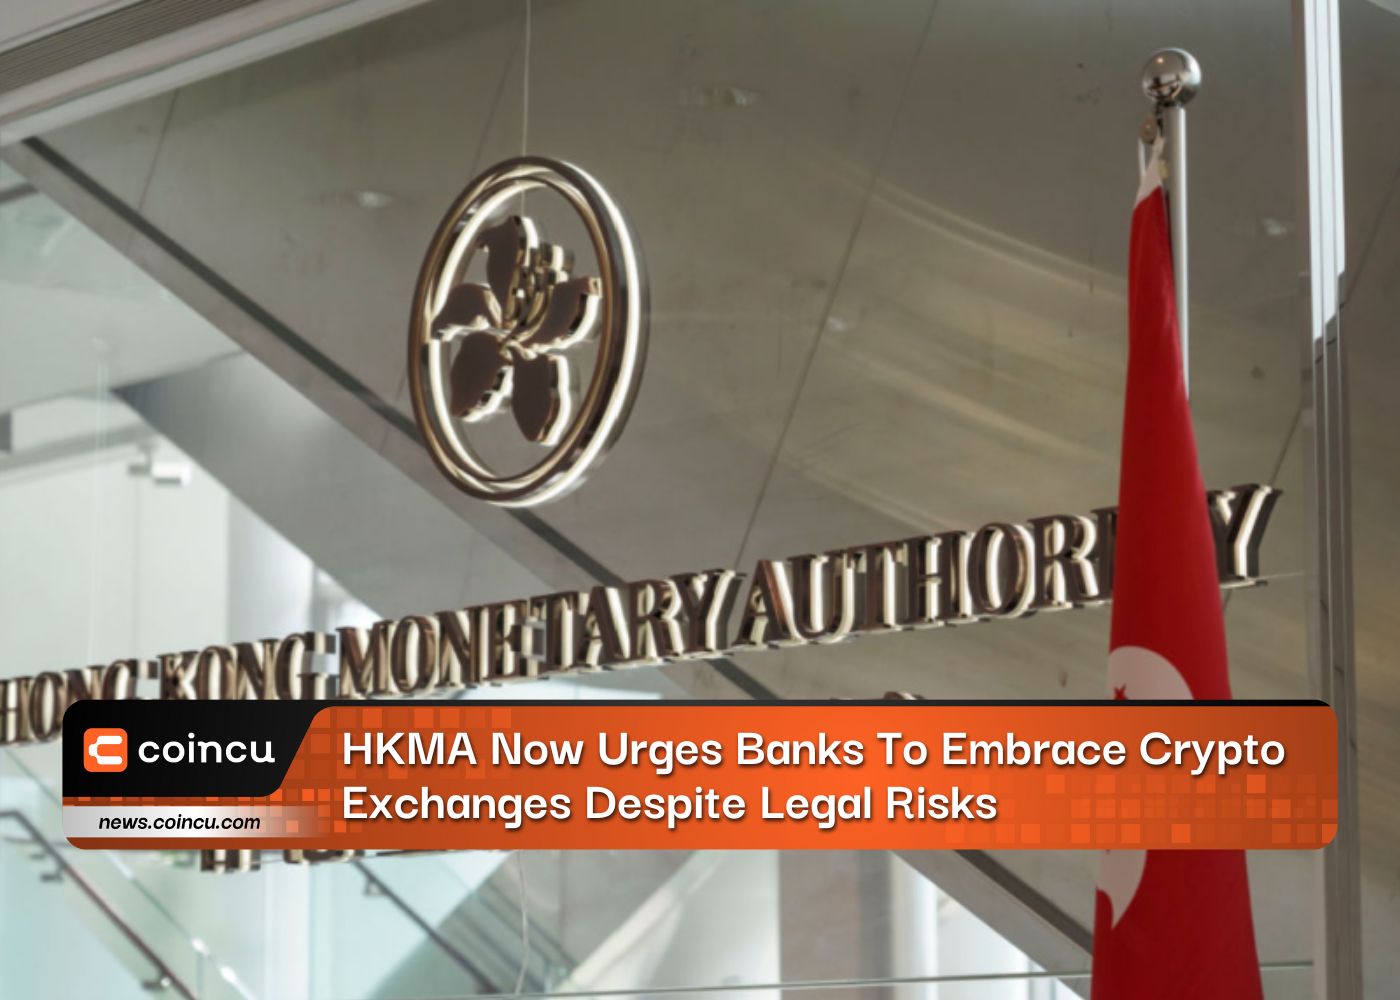 HKMA hiện kêu gọi các ngân hàng nắm bắt các sàn giao dịch tiền điện tử bất chấp rủi ro pháp lý